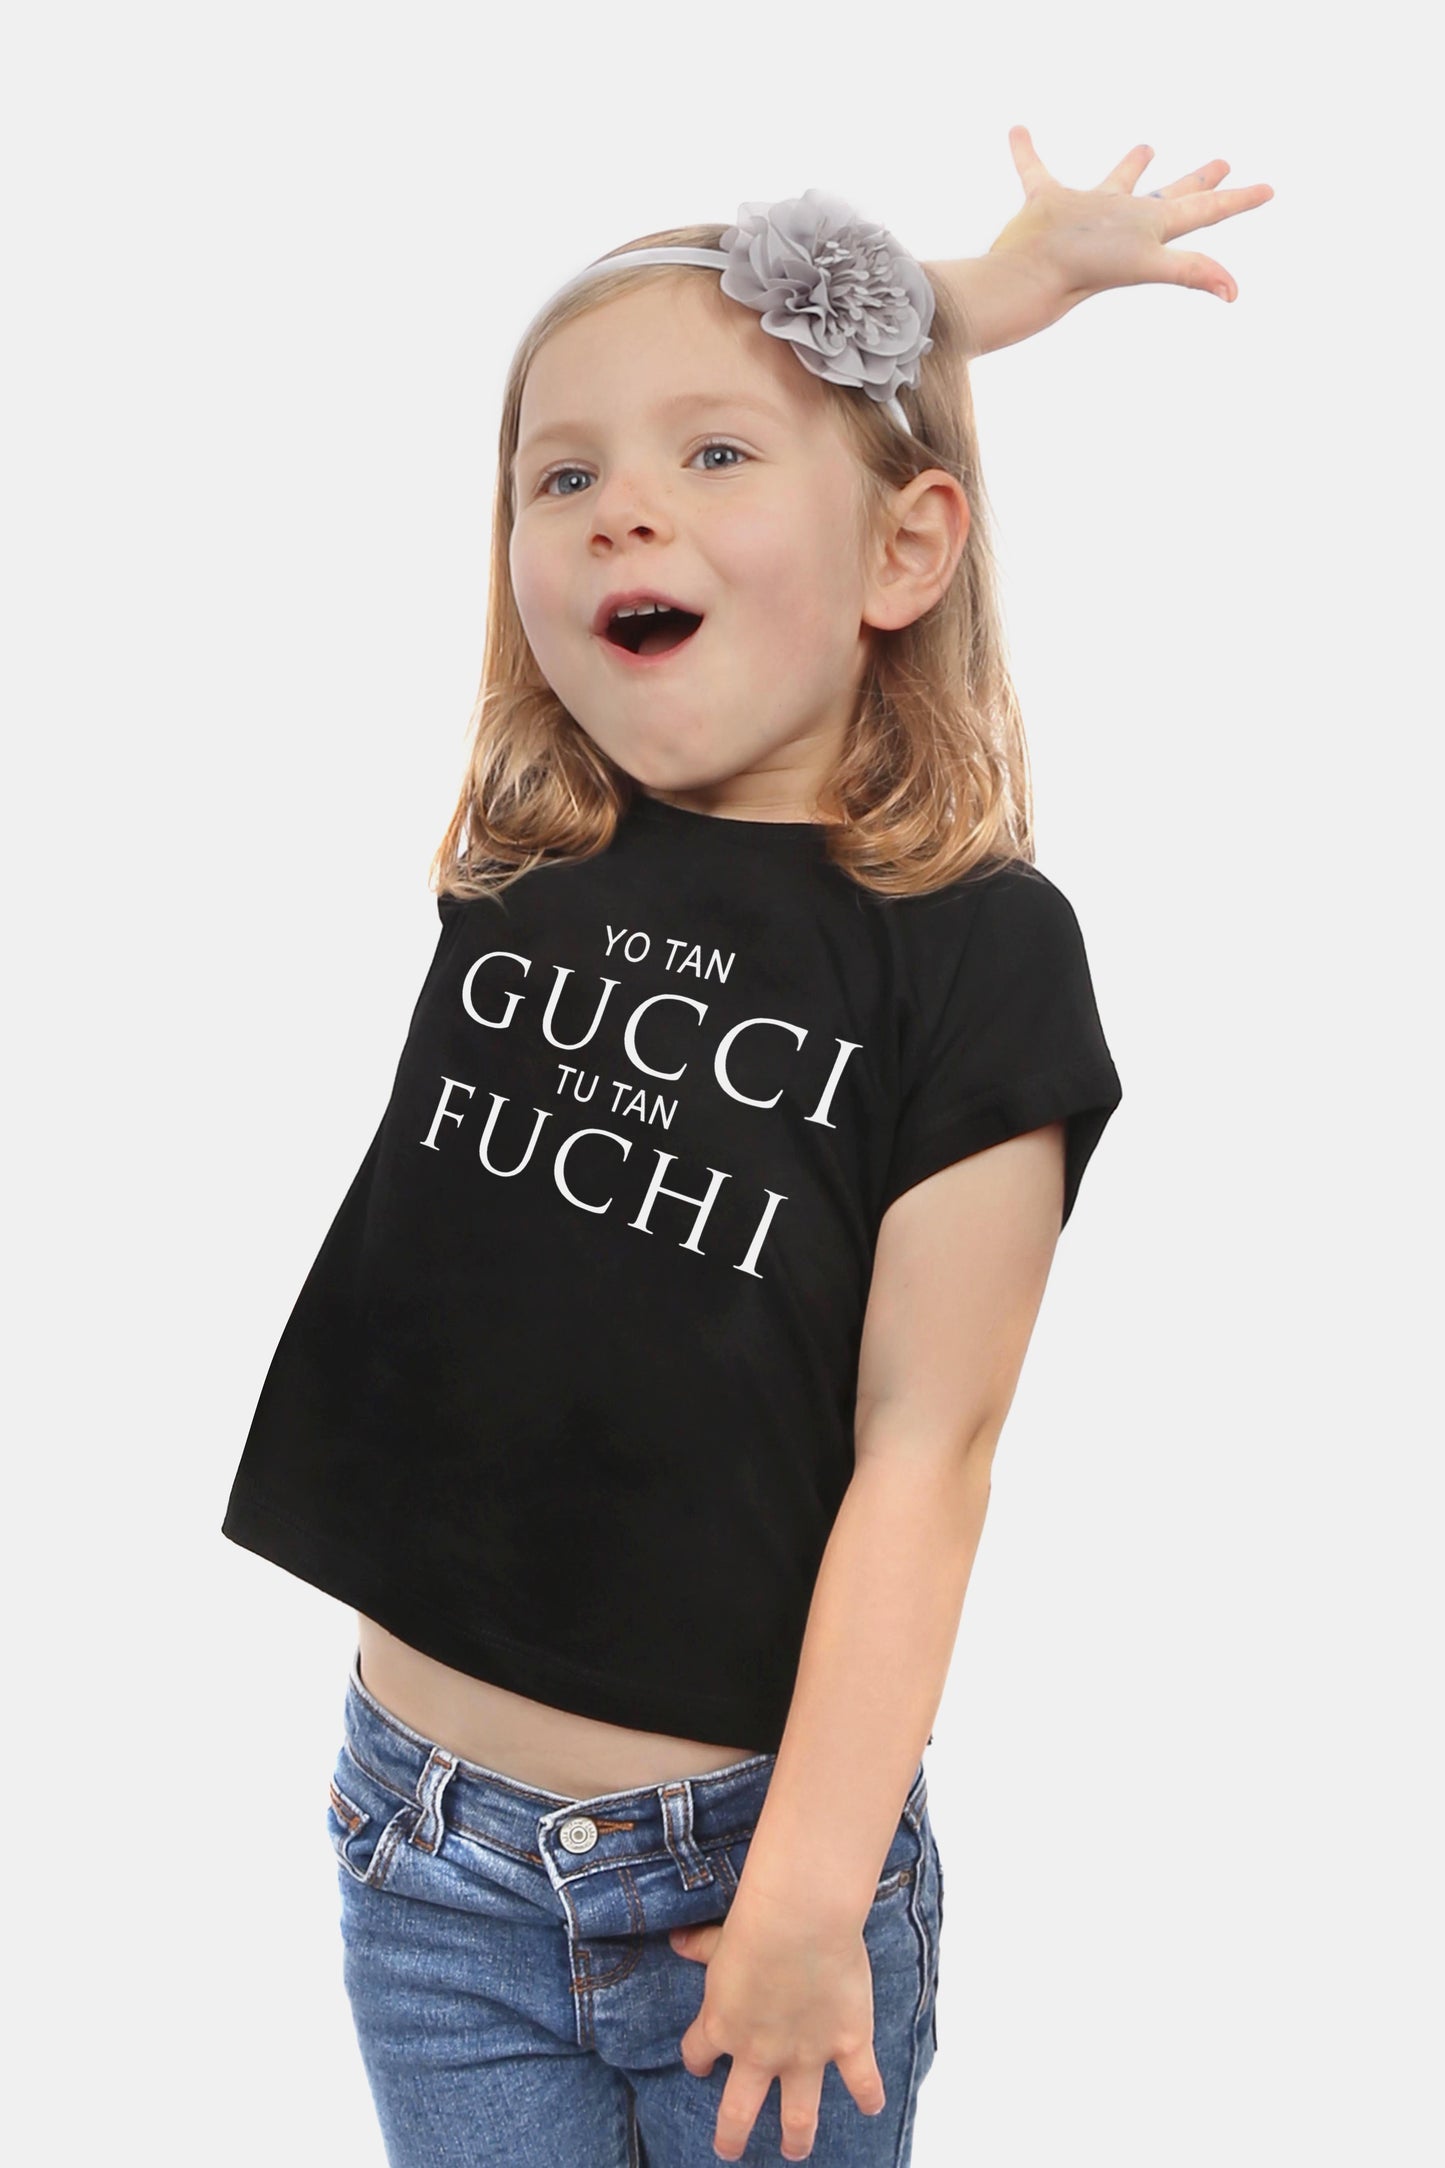 Kids_BSC Gucci_Fuchi (5473566556322)